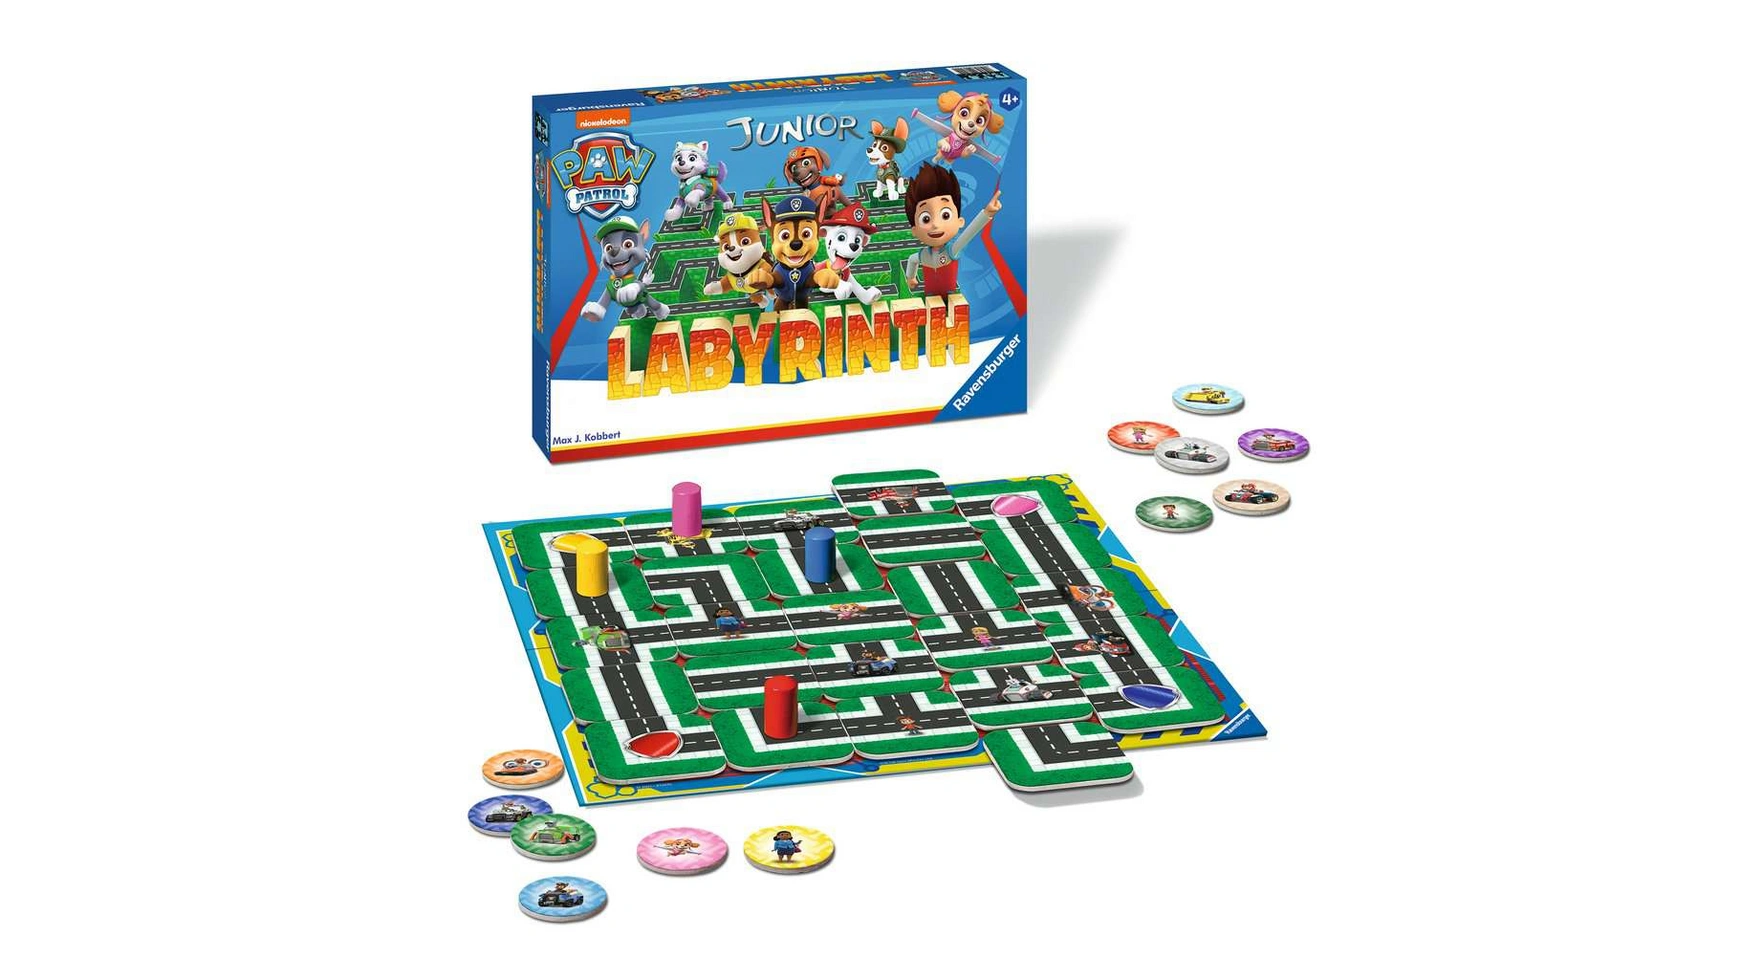 цена Ravensburger Spiele Paw Patrol Junior Labyrinth, известная настольная игра от Ravensburger в детской версии